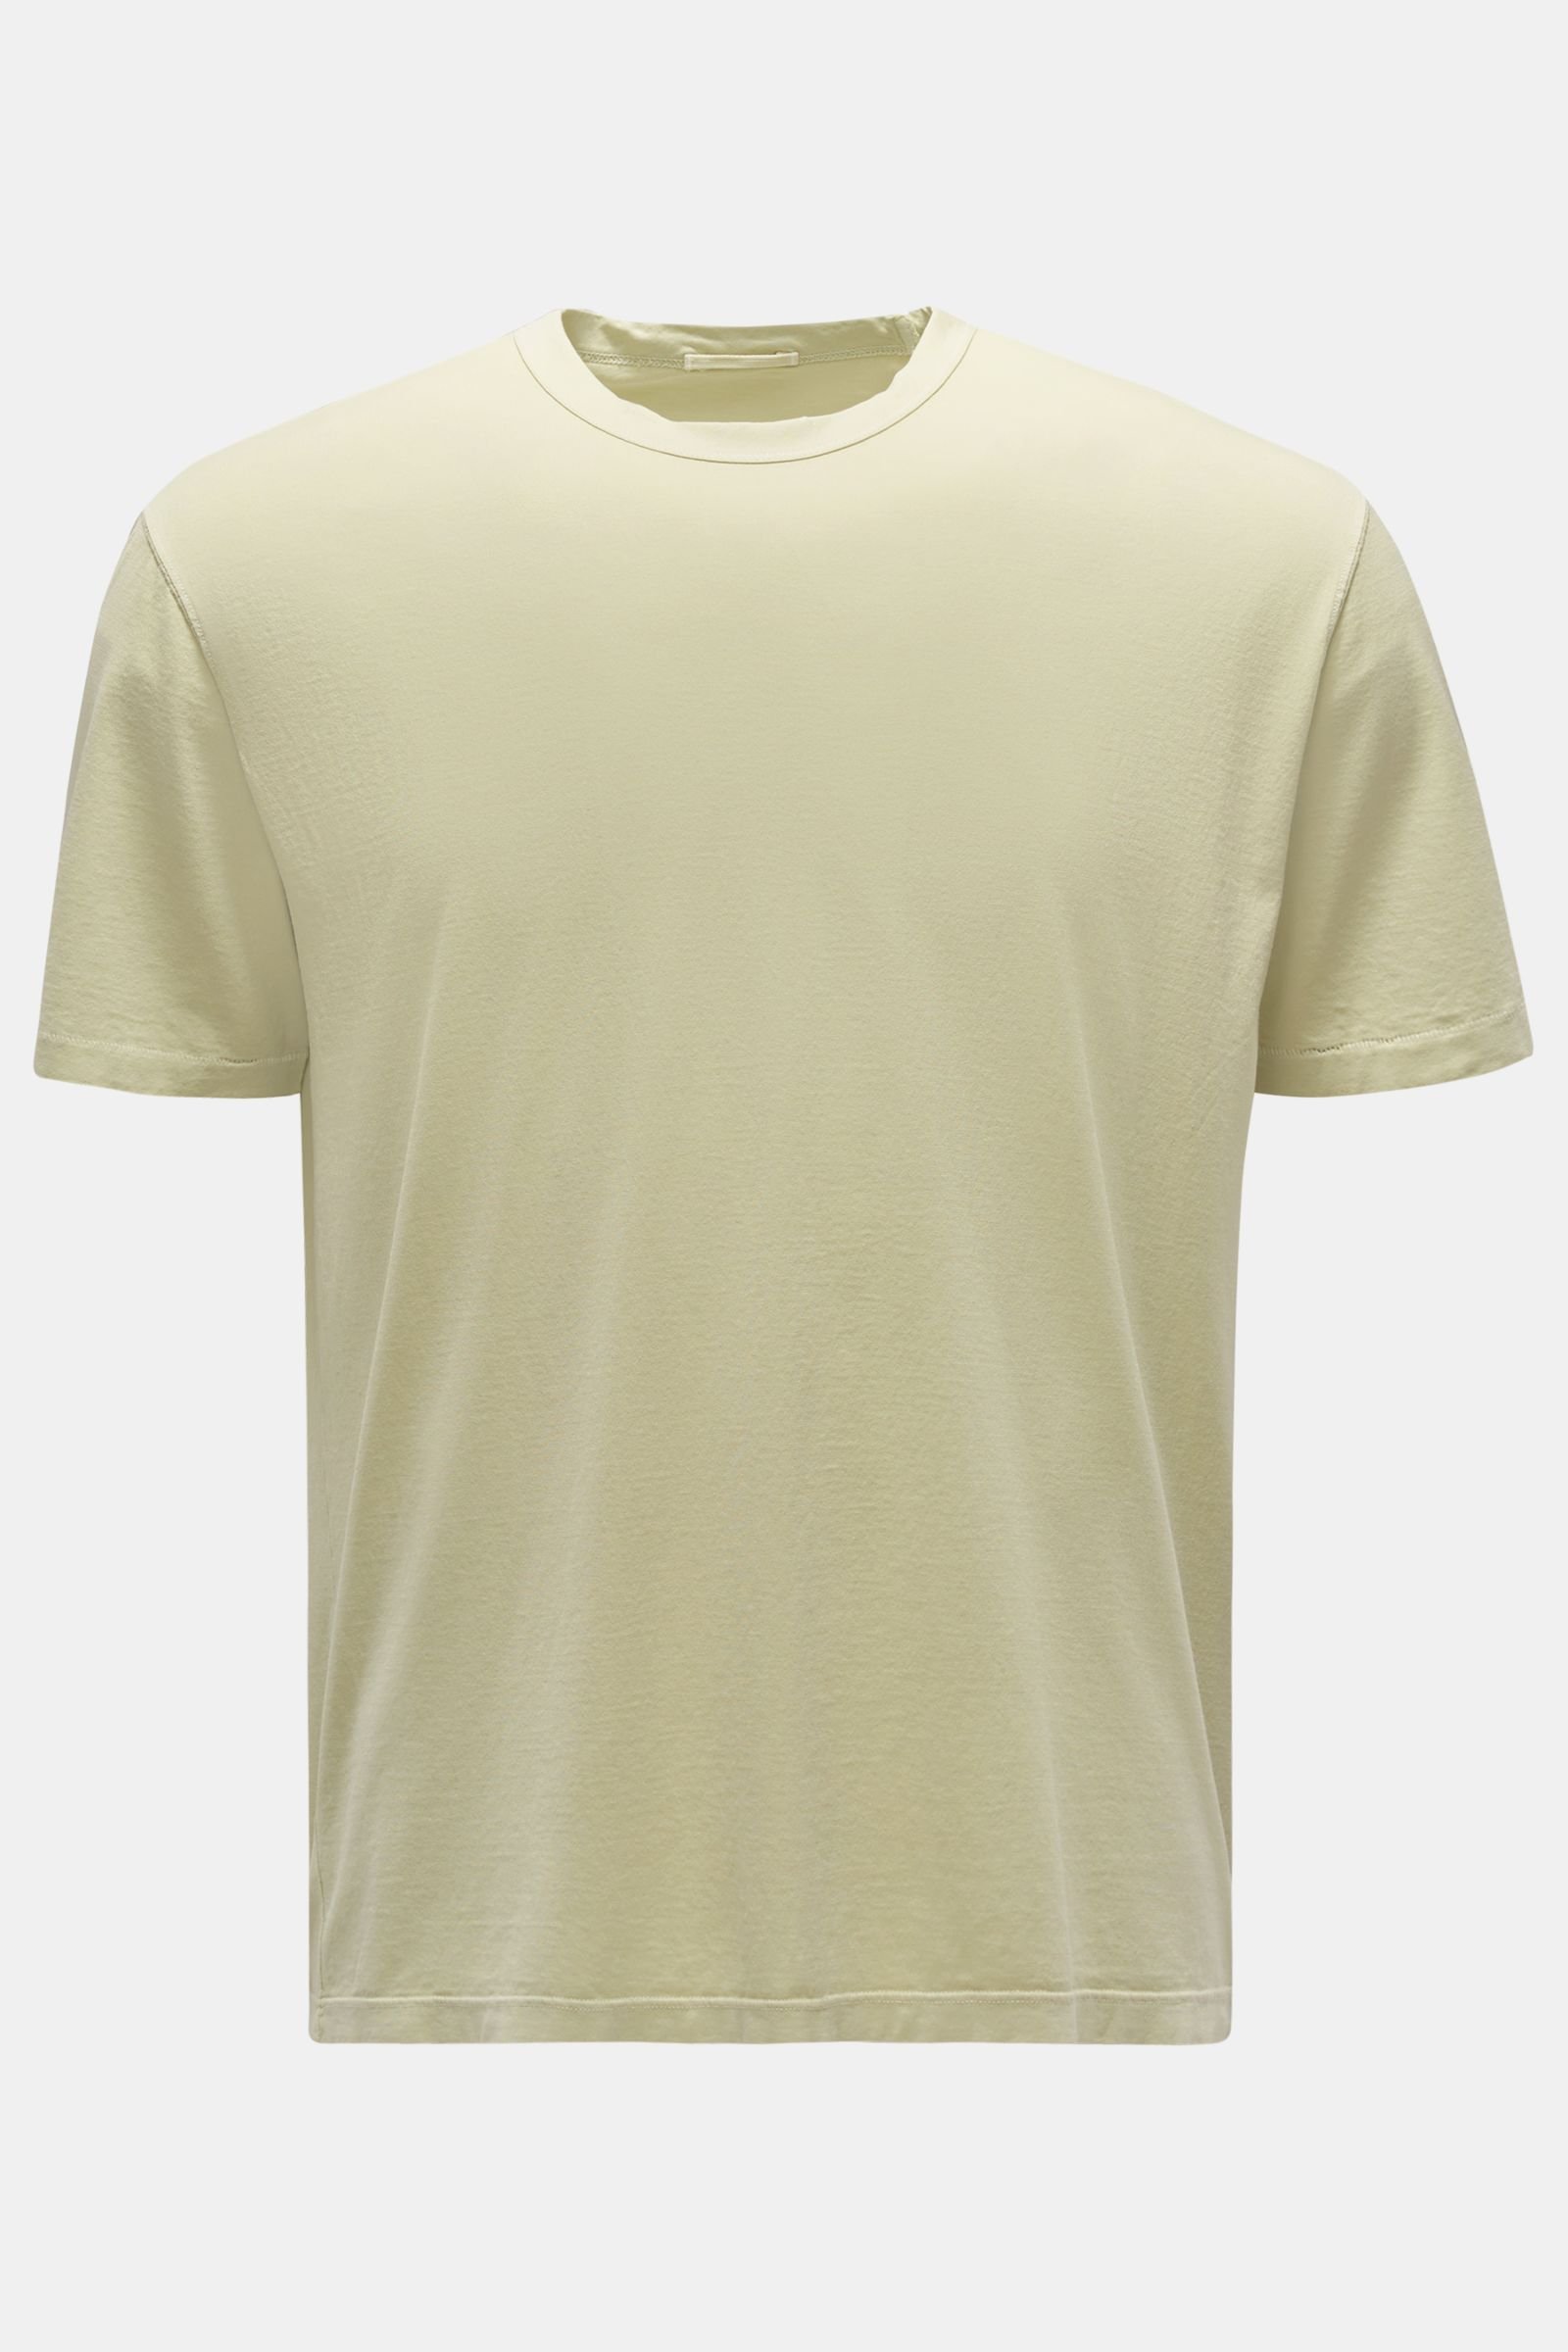 Rundhals-T-Shirt pastellgrün